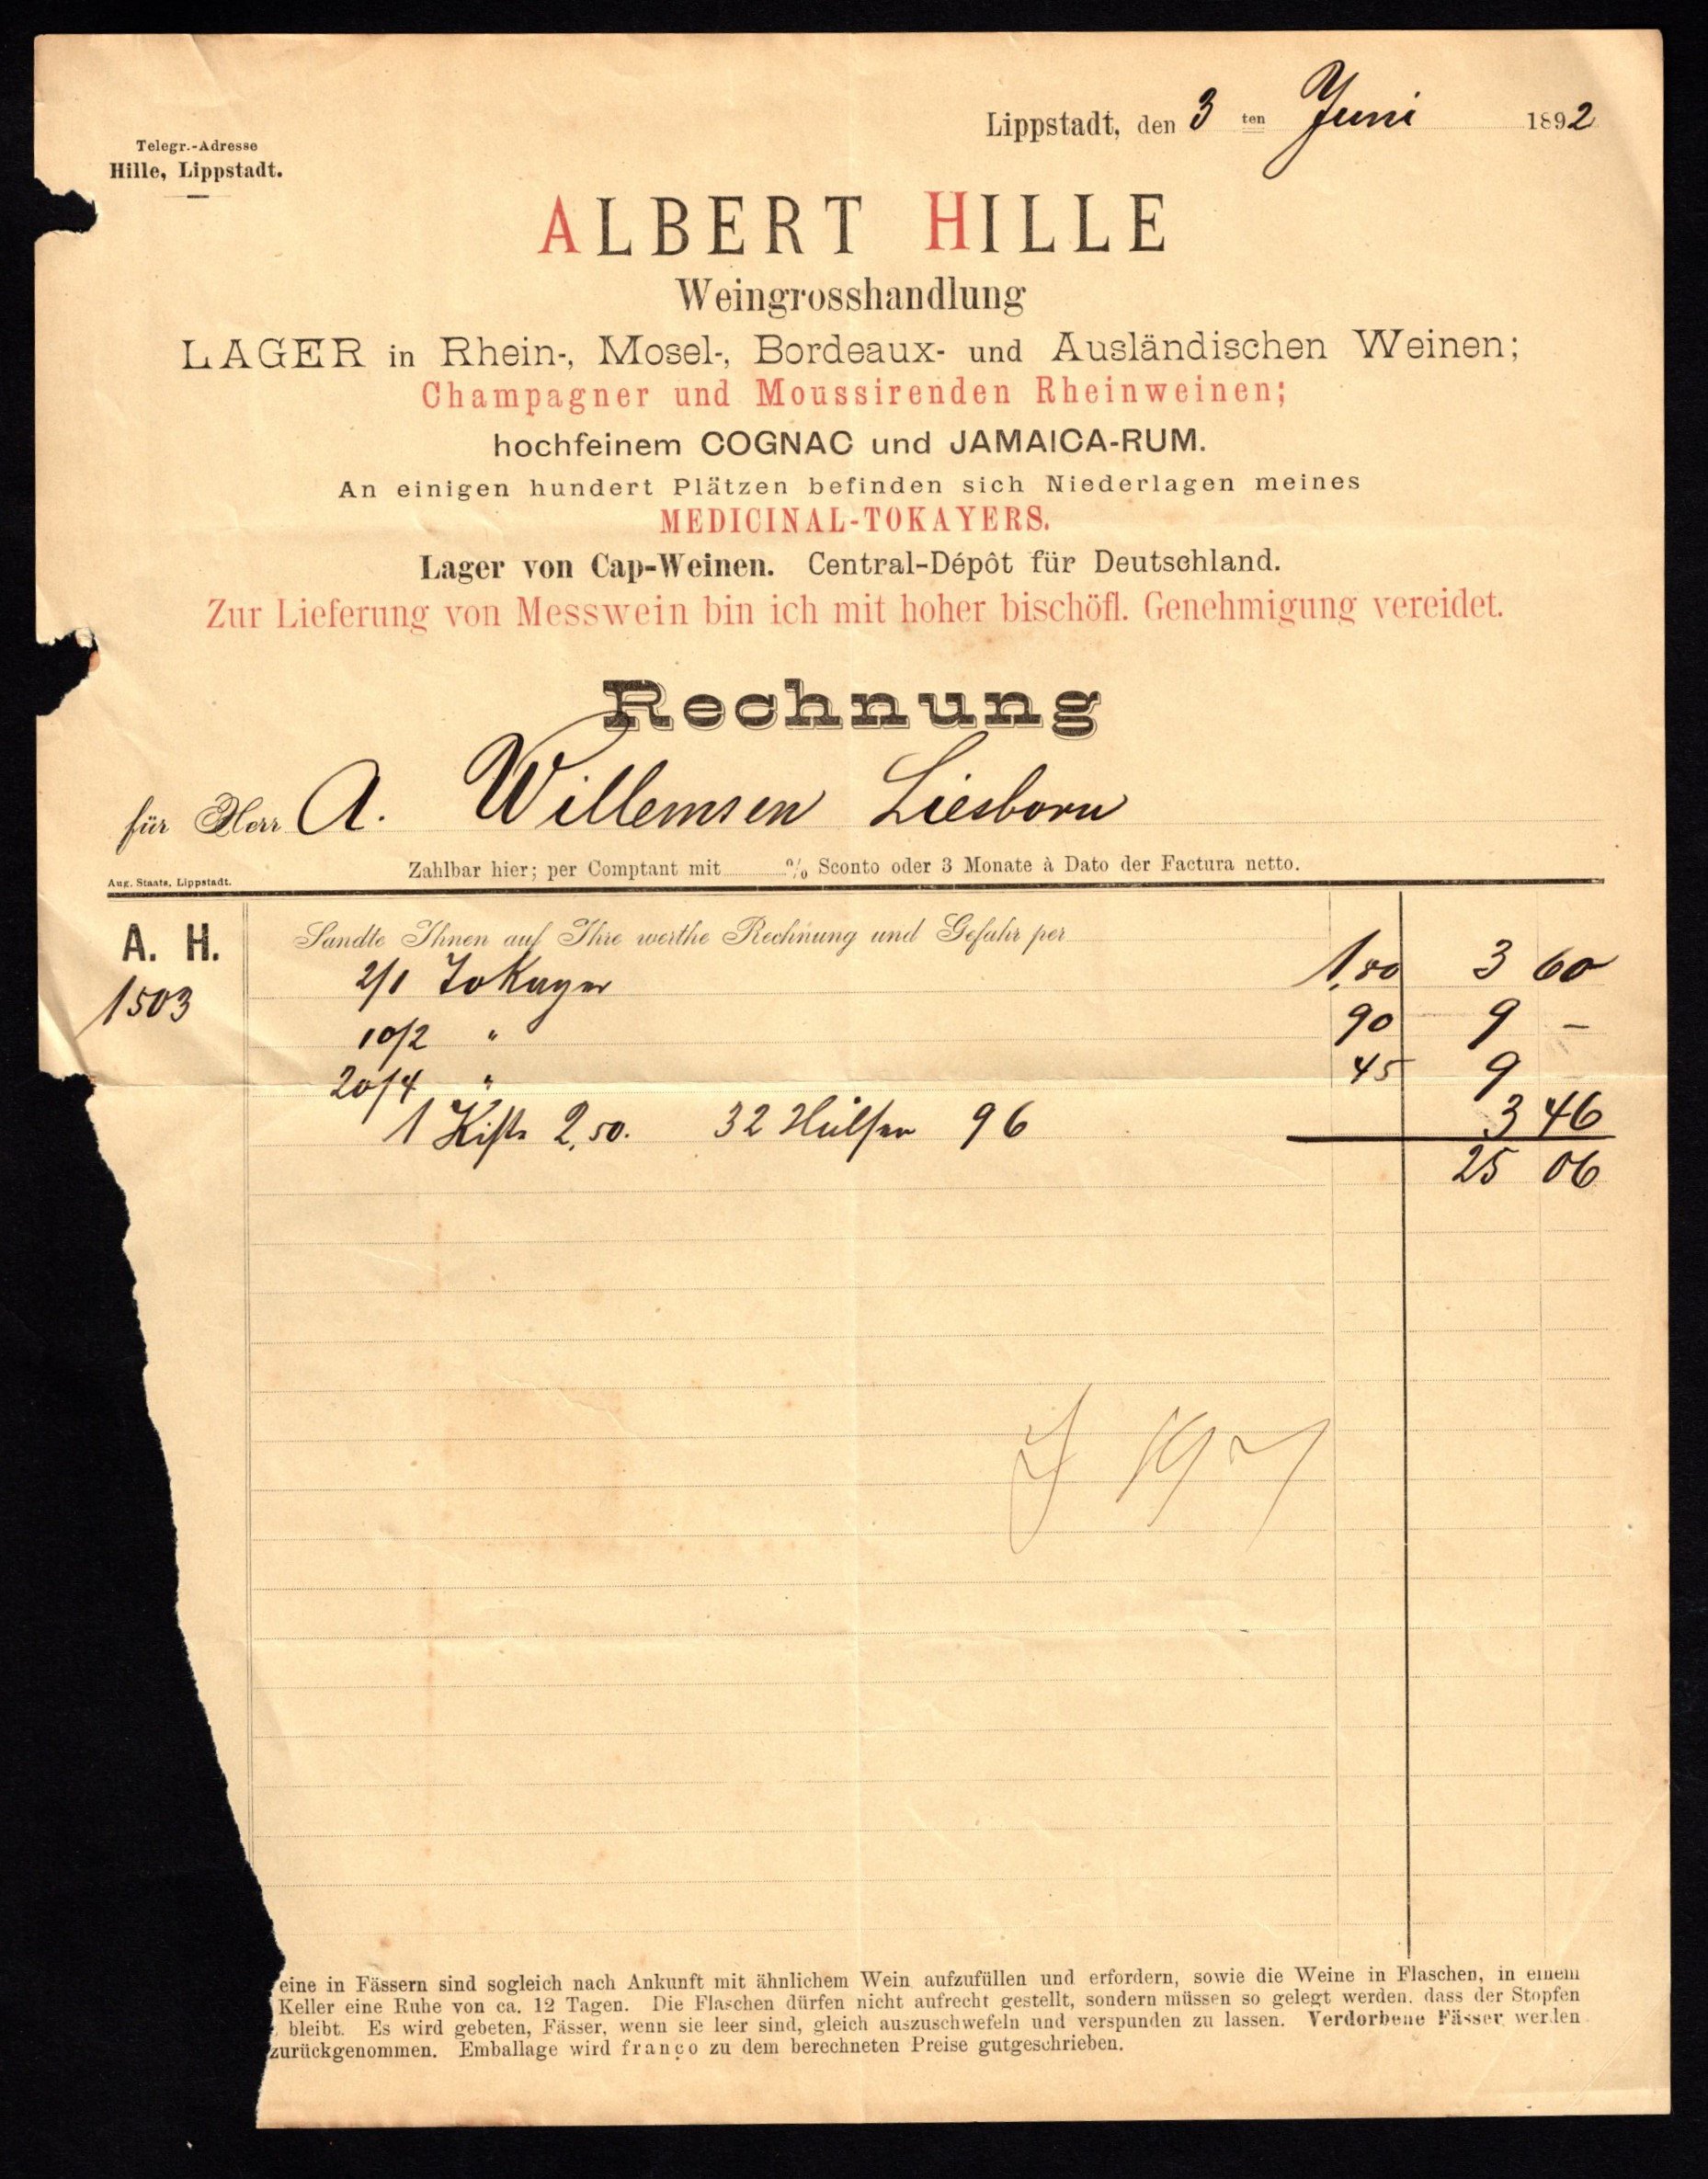 Rechnung der "Weingroßhandlung Albert Hille, Lippstadt-Rüdesheim" 1892 (Stadtmuseum Lippstadt RR-F)